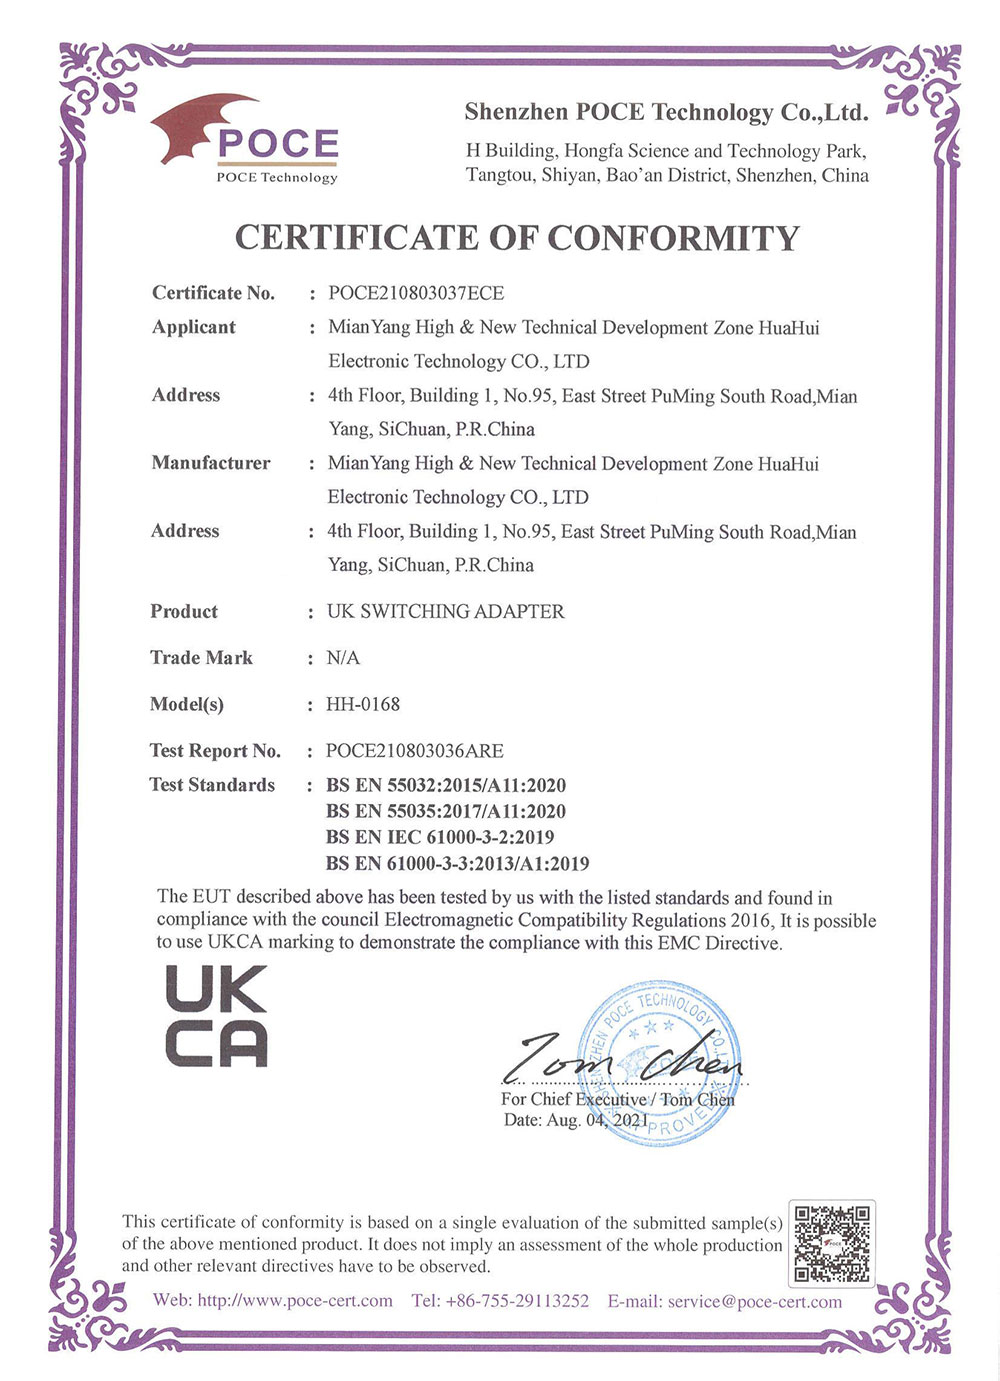 UKCA-certificate_00